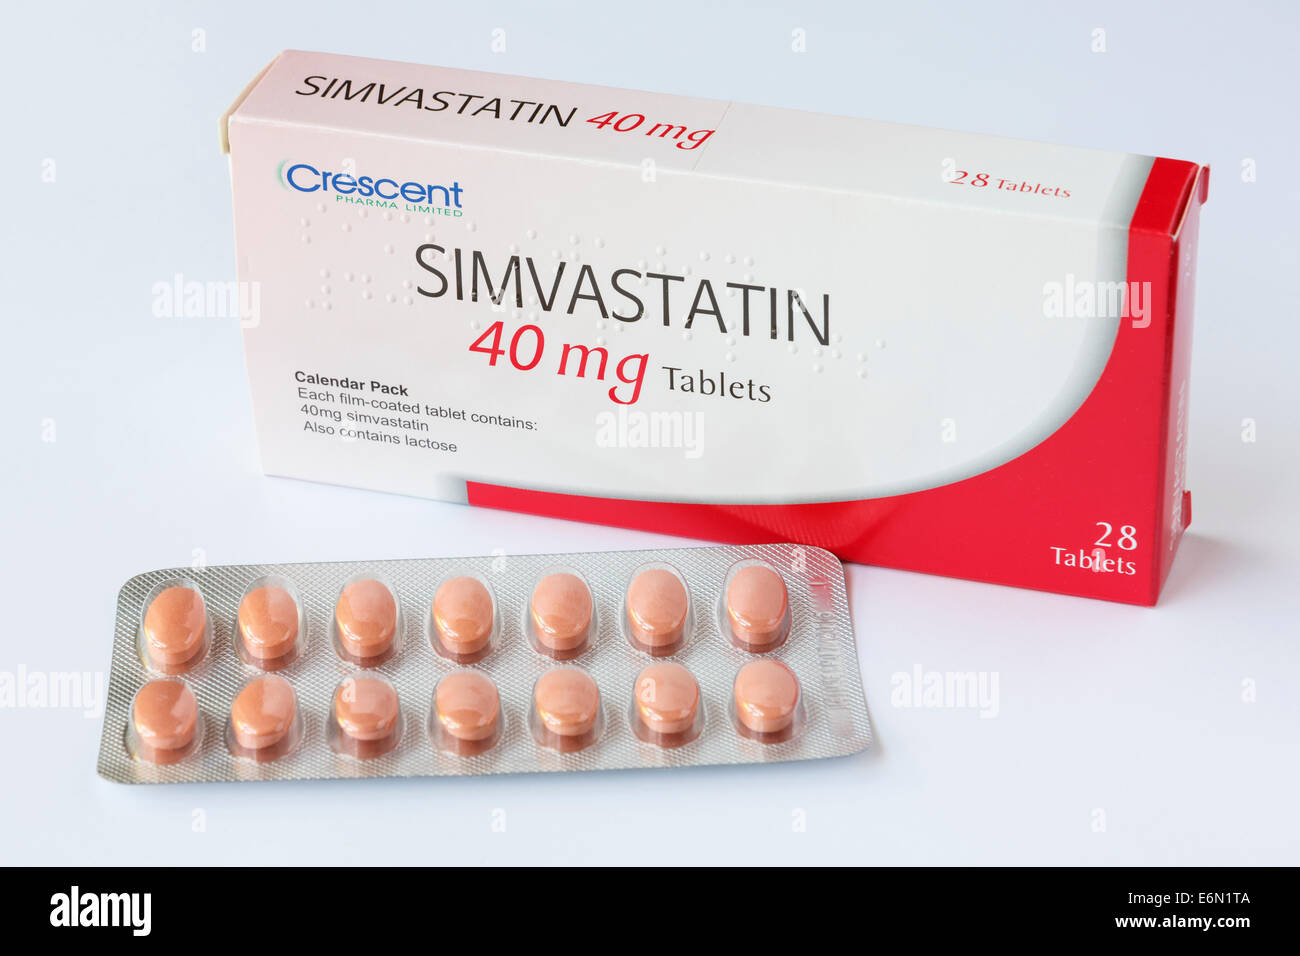 Crescent Pharma Limited Simvastatin 40 mg Tabletten in einer Folie Blisterpackung mit Box für vorgeschriebene Behandlung und Reduzierung der hohen Cholesterin. England Großbritannien Stockfoto